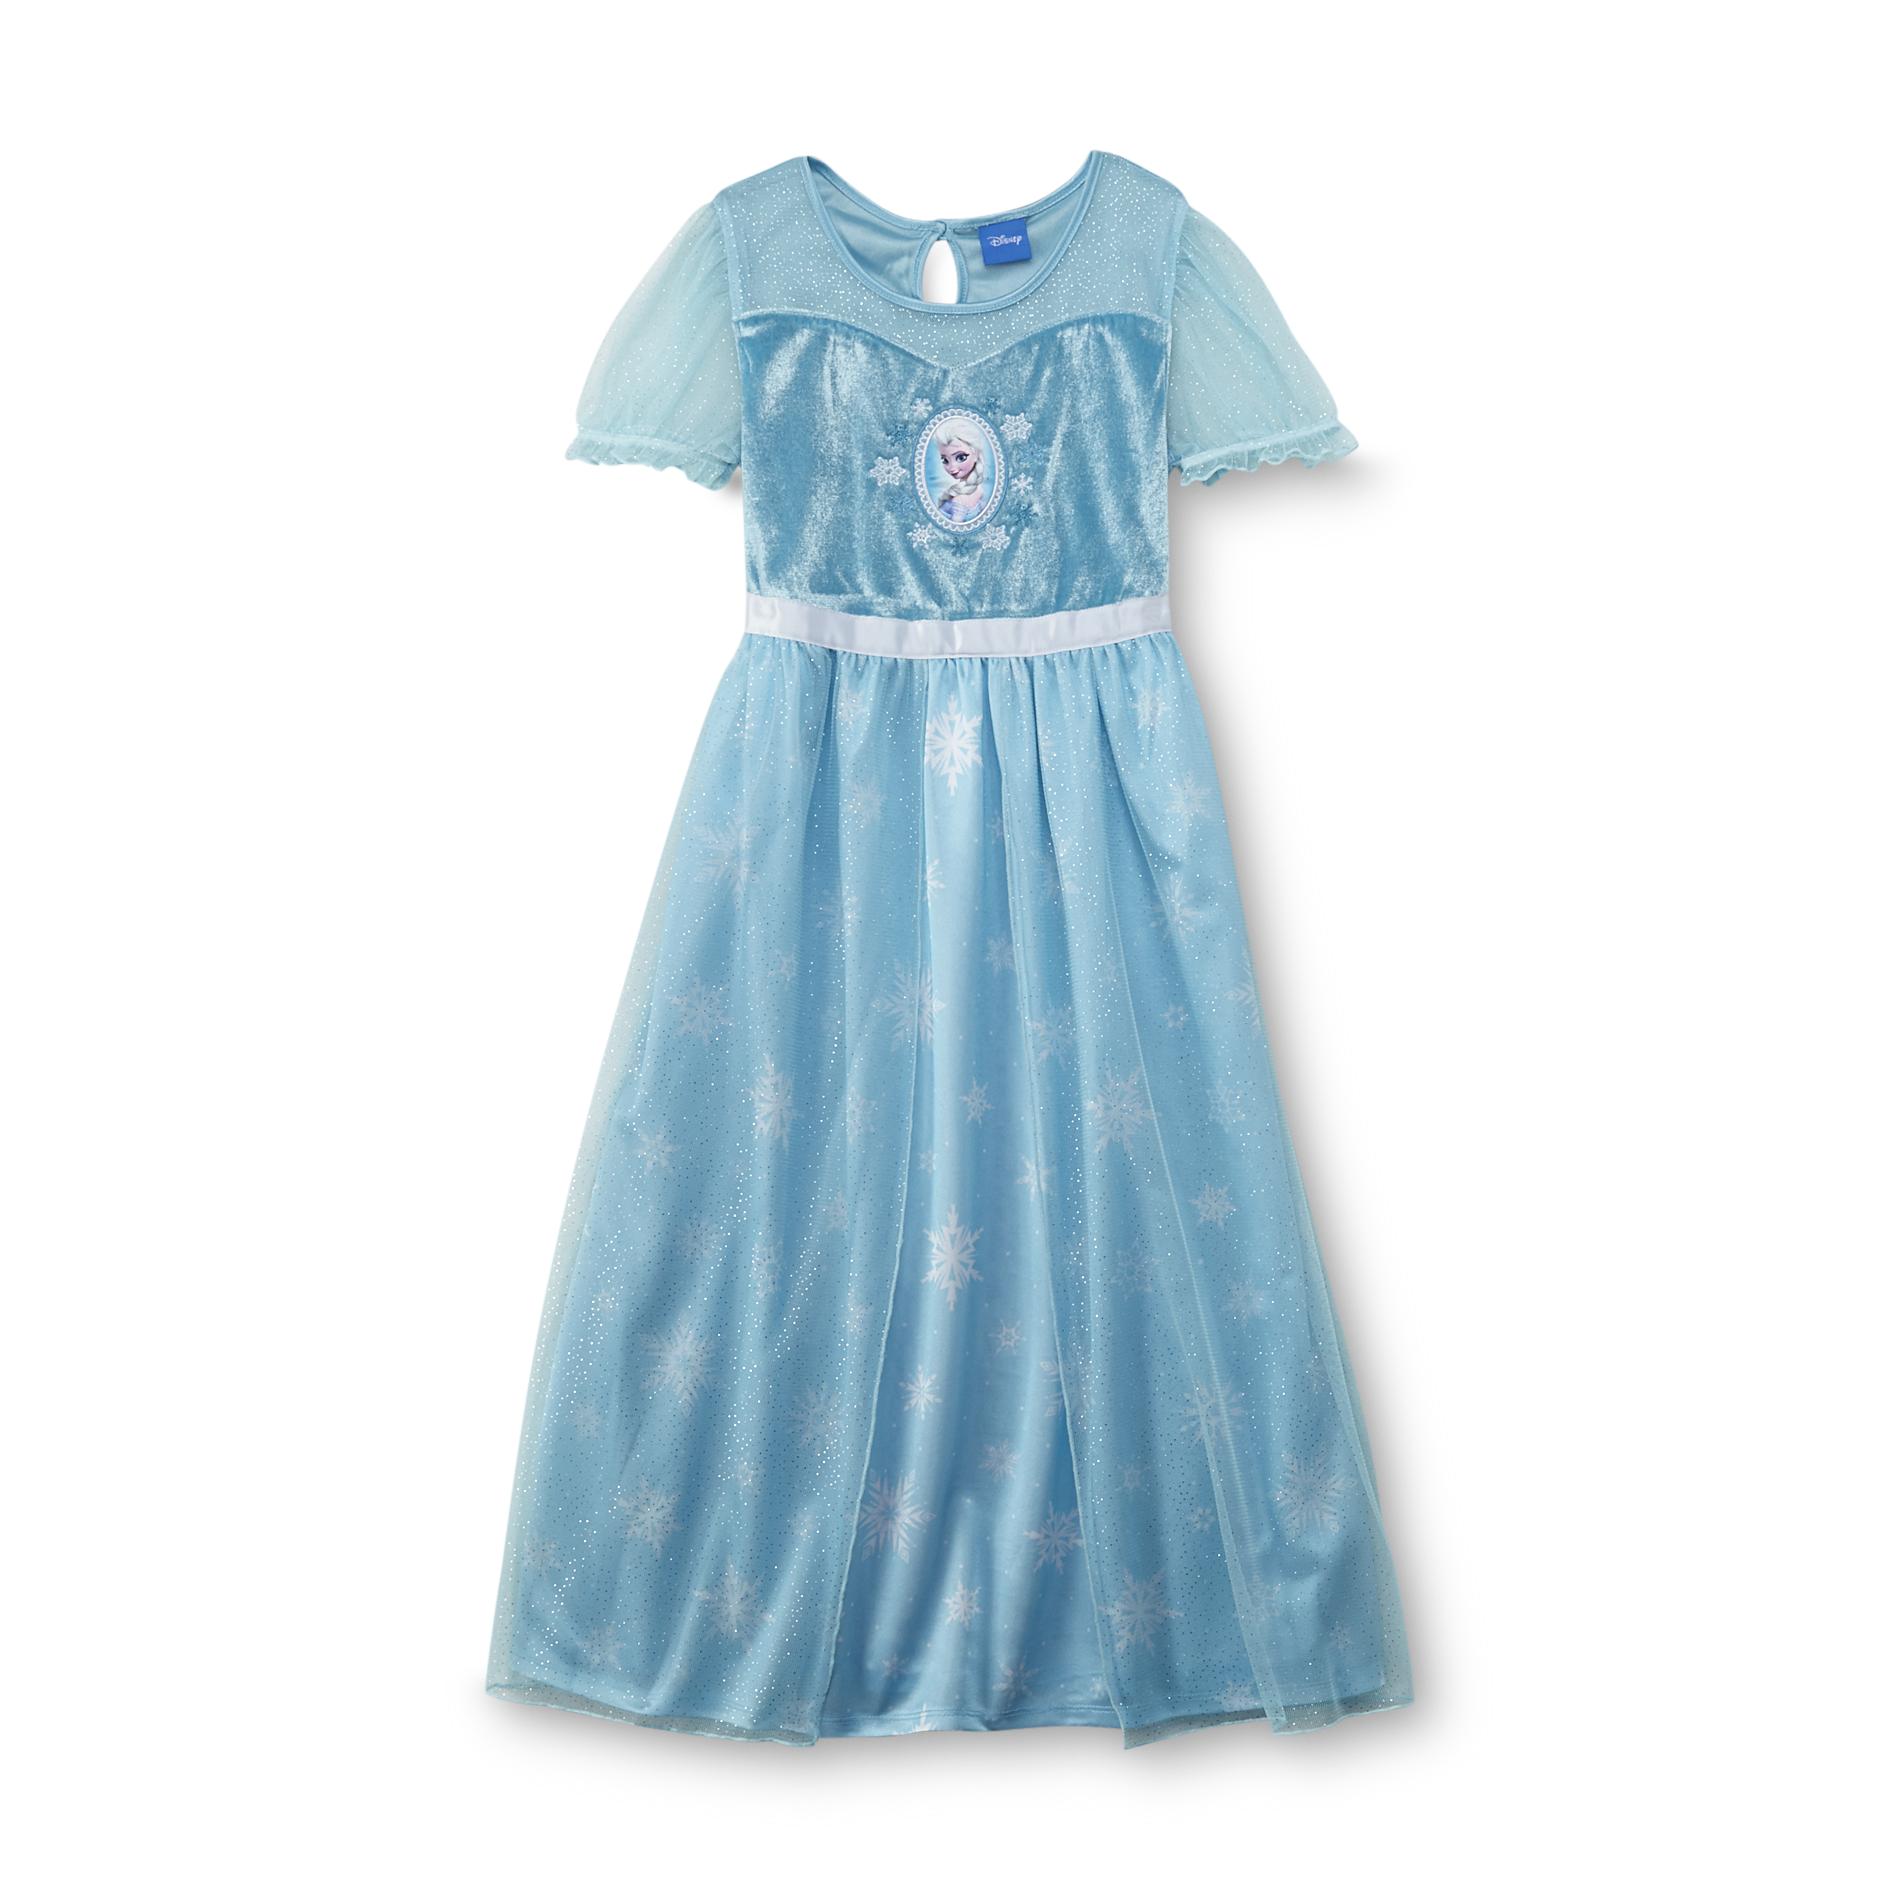 Disney Frozen Girl's Costume Nightgown - Elsa